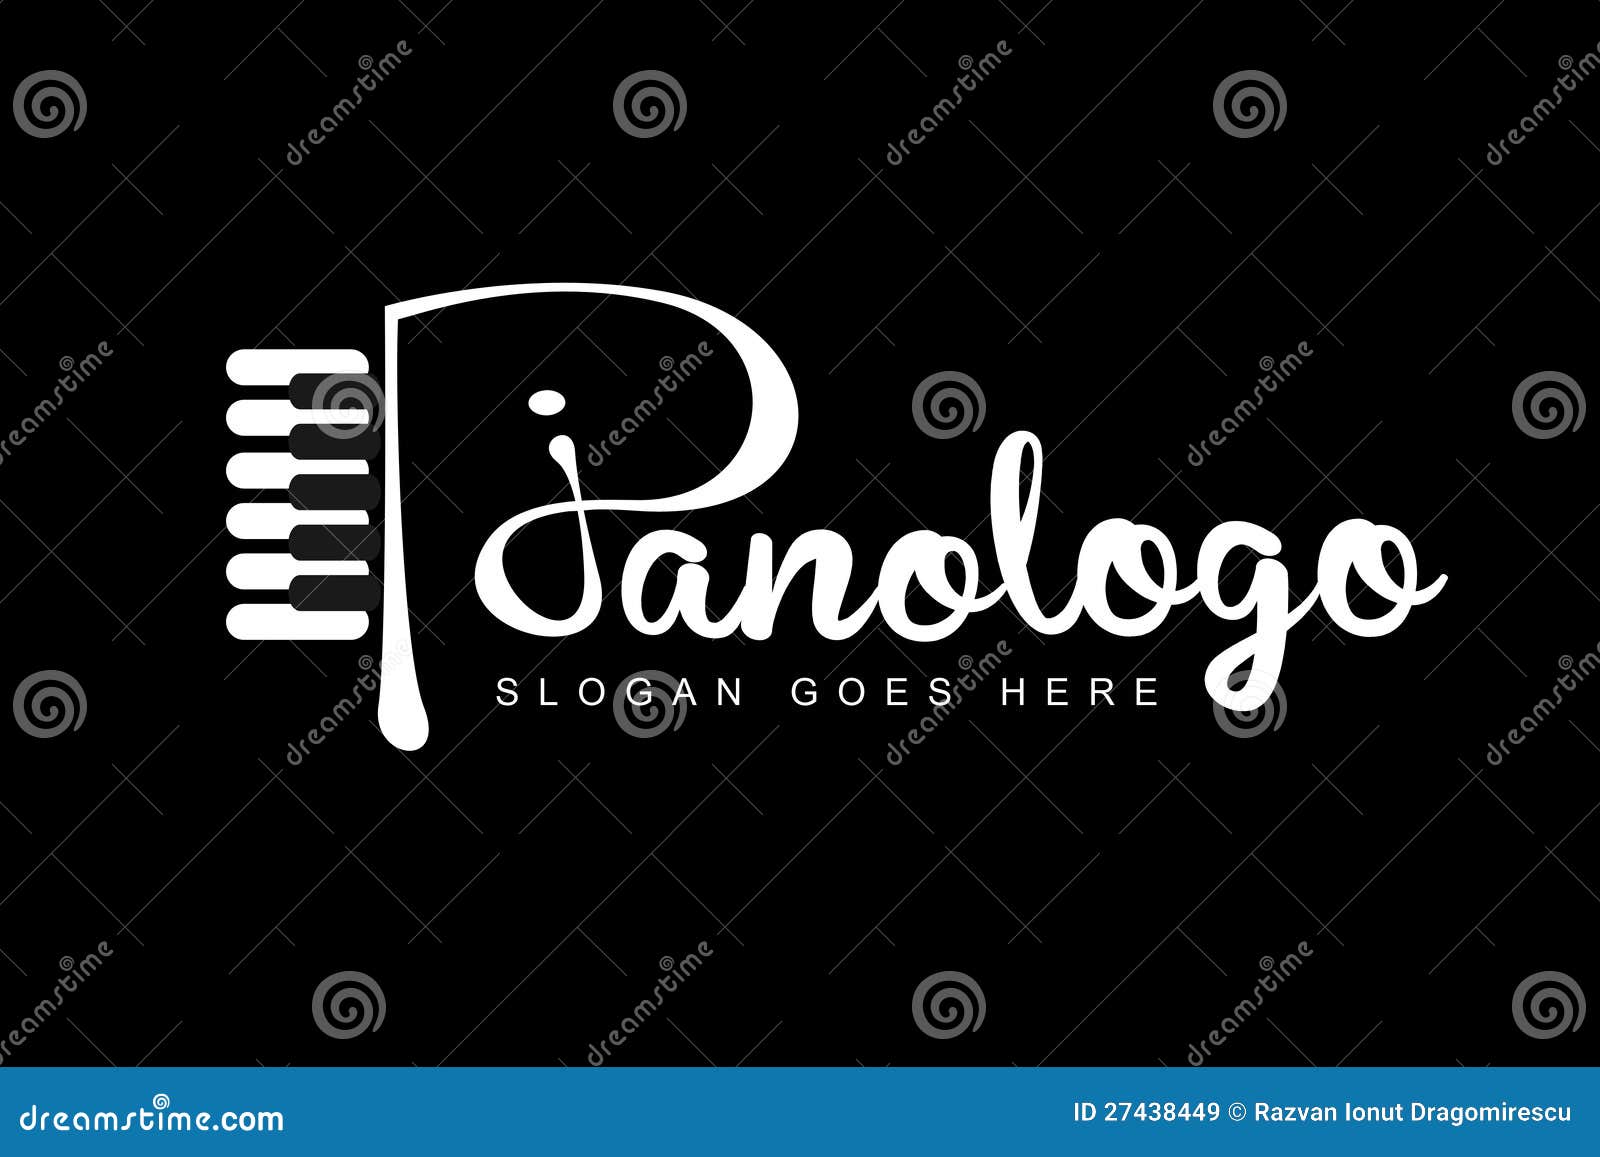 textual piano logo